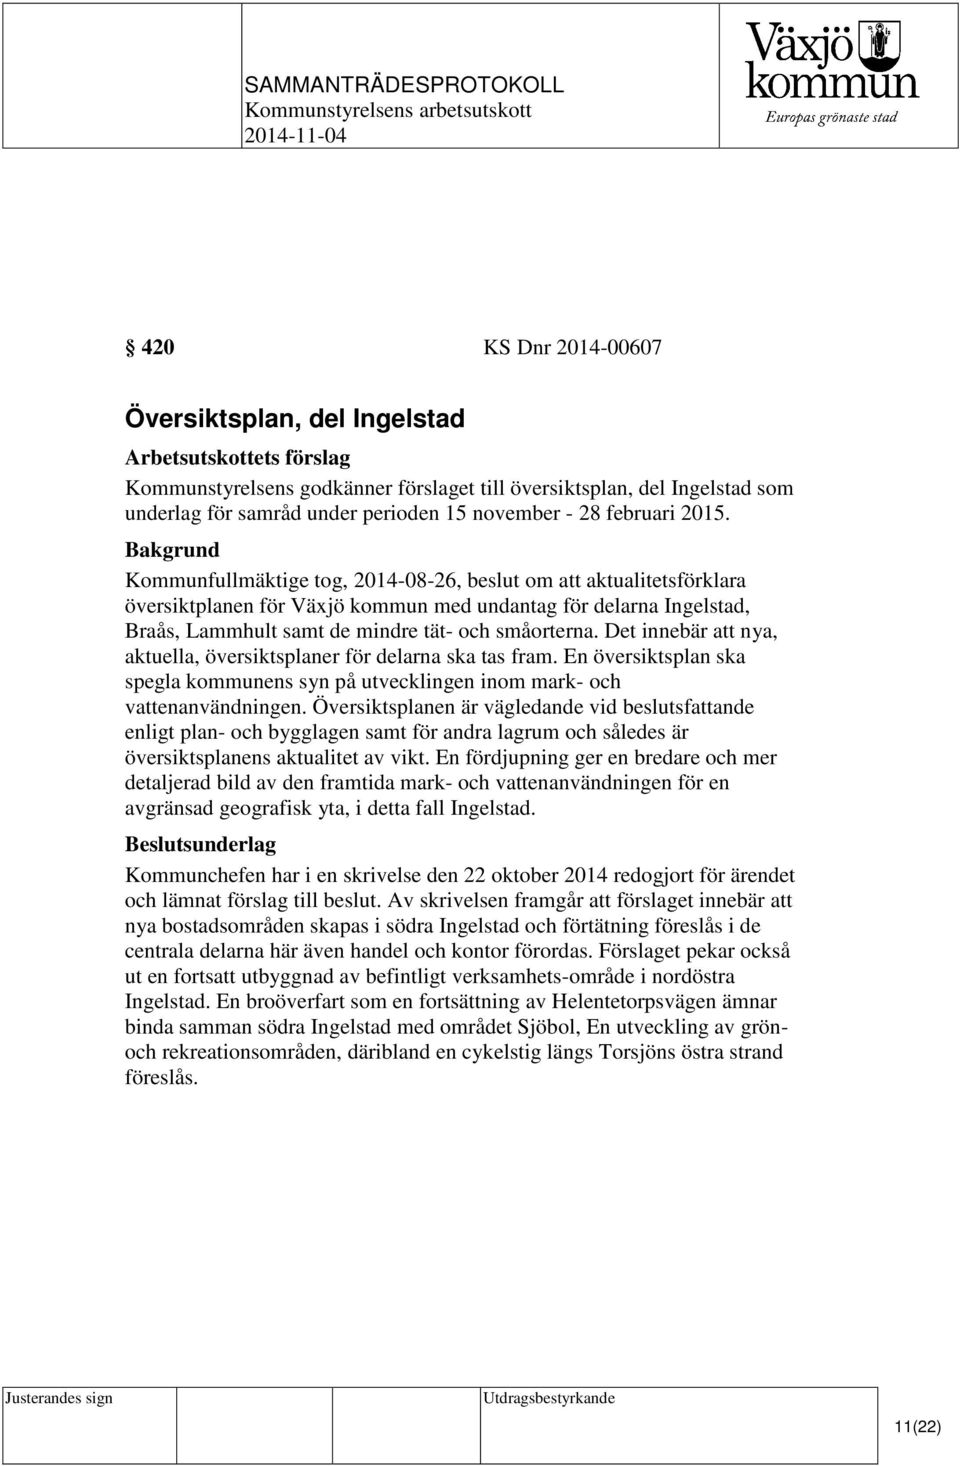 Kommunfullmäktige tog, 2014-08-26, beslut om att aktualitetsförklara översiktplanen för Växjö kommun med undantag för delarna Ingelstad, Braås, Lammhult samt de mindre tät- och småorterna.